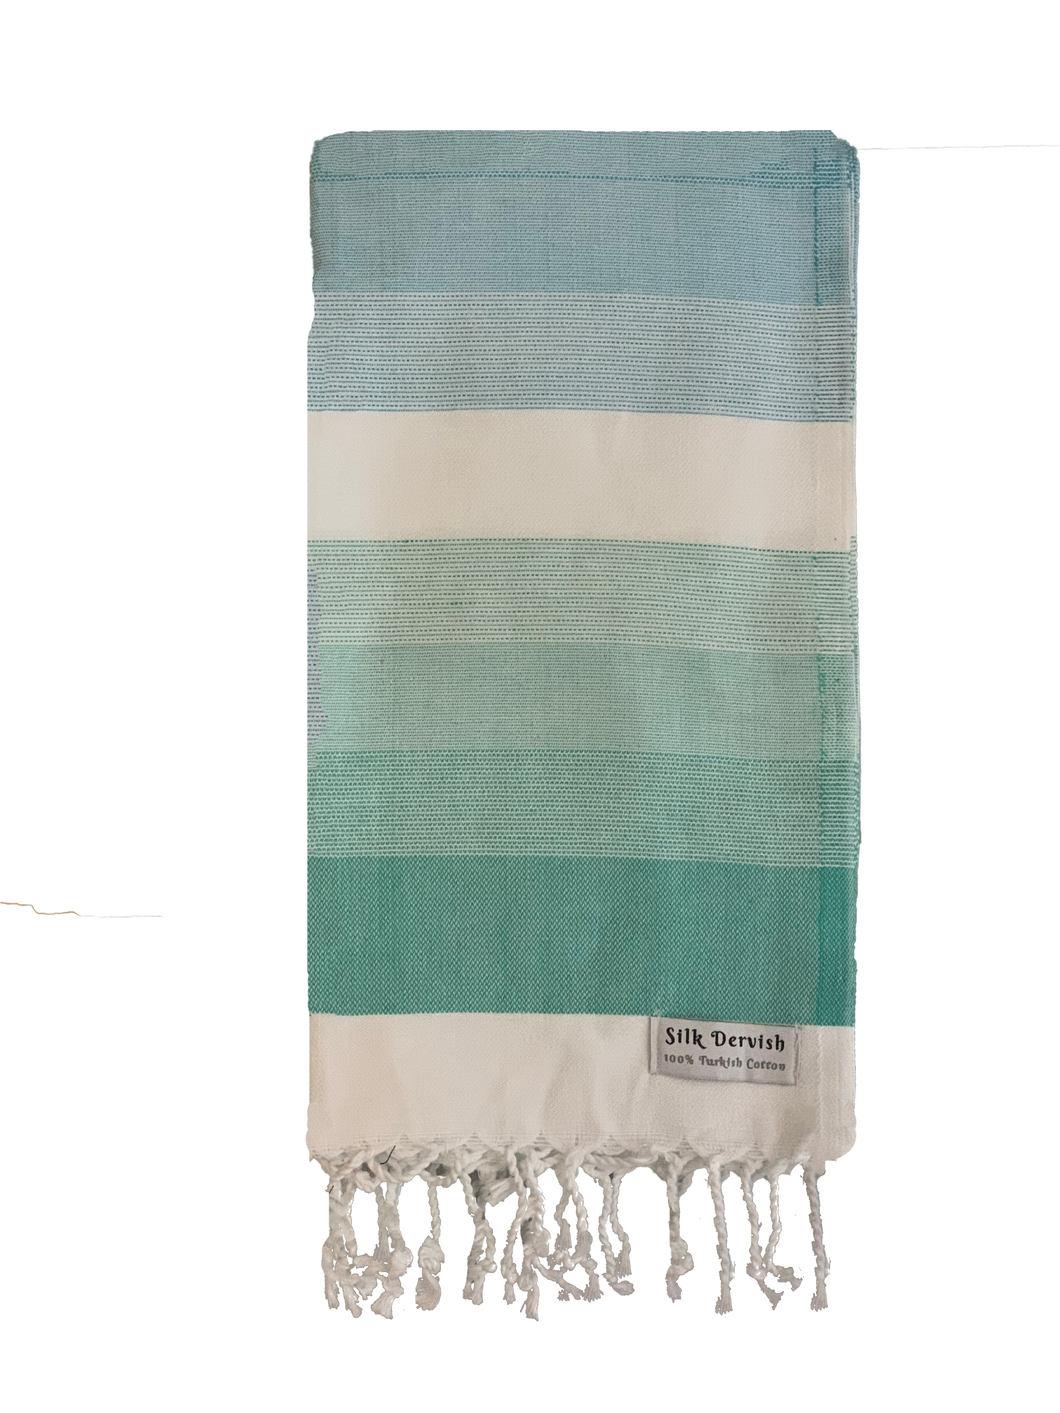 Colourful Mint Turkish Towel Silk Dervish Turkish Cotton Towels